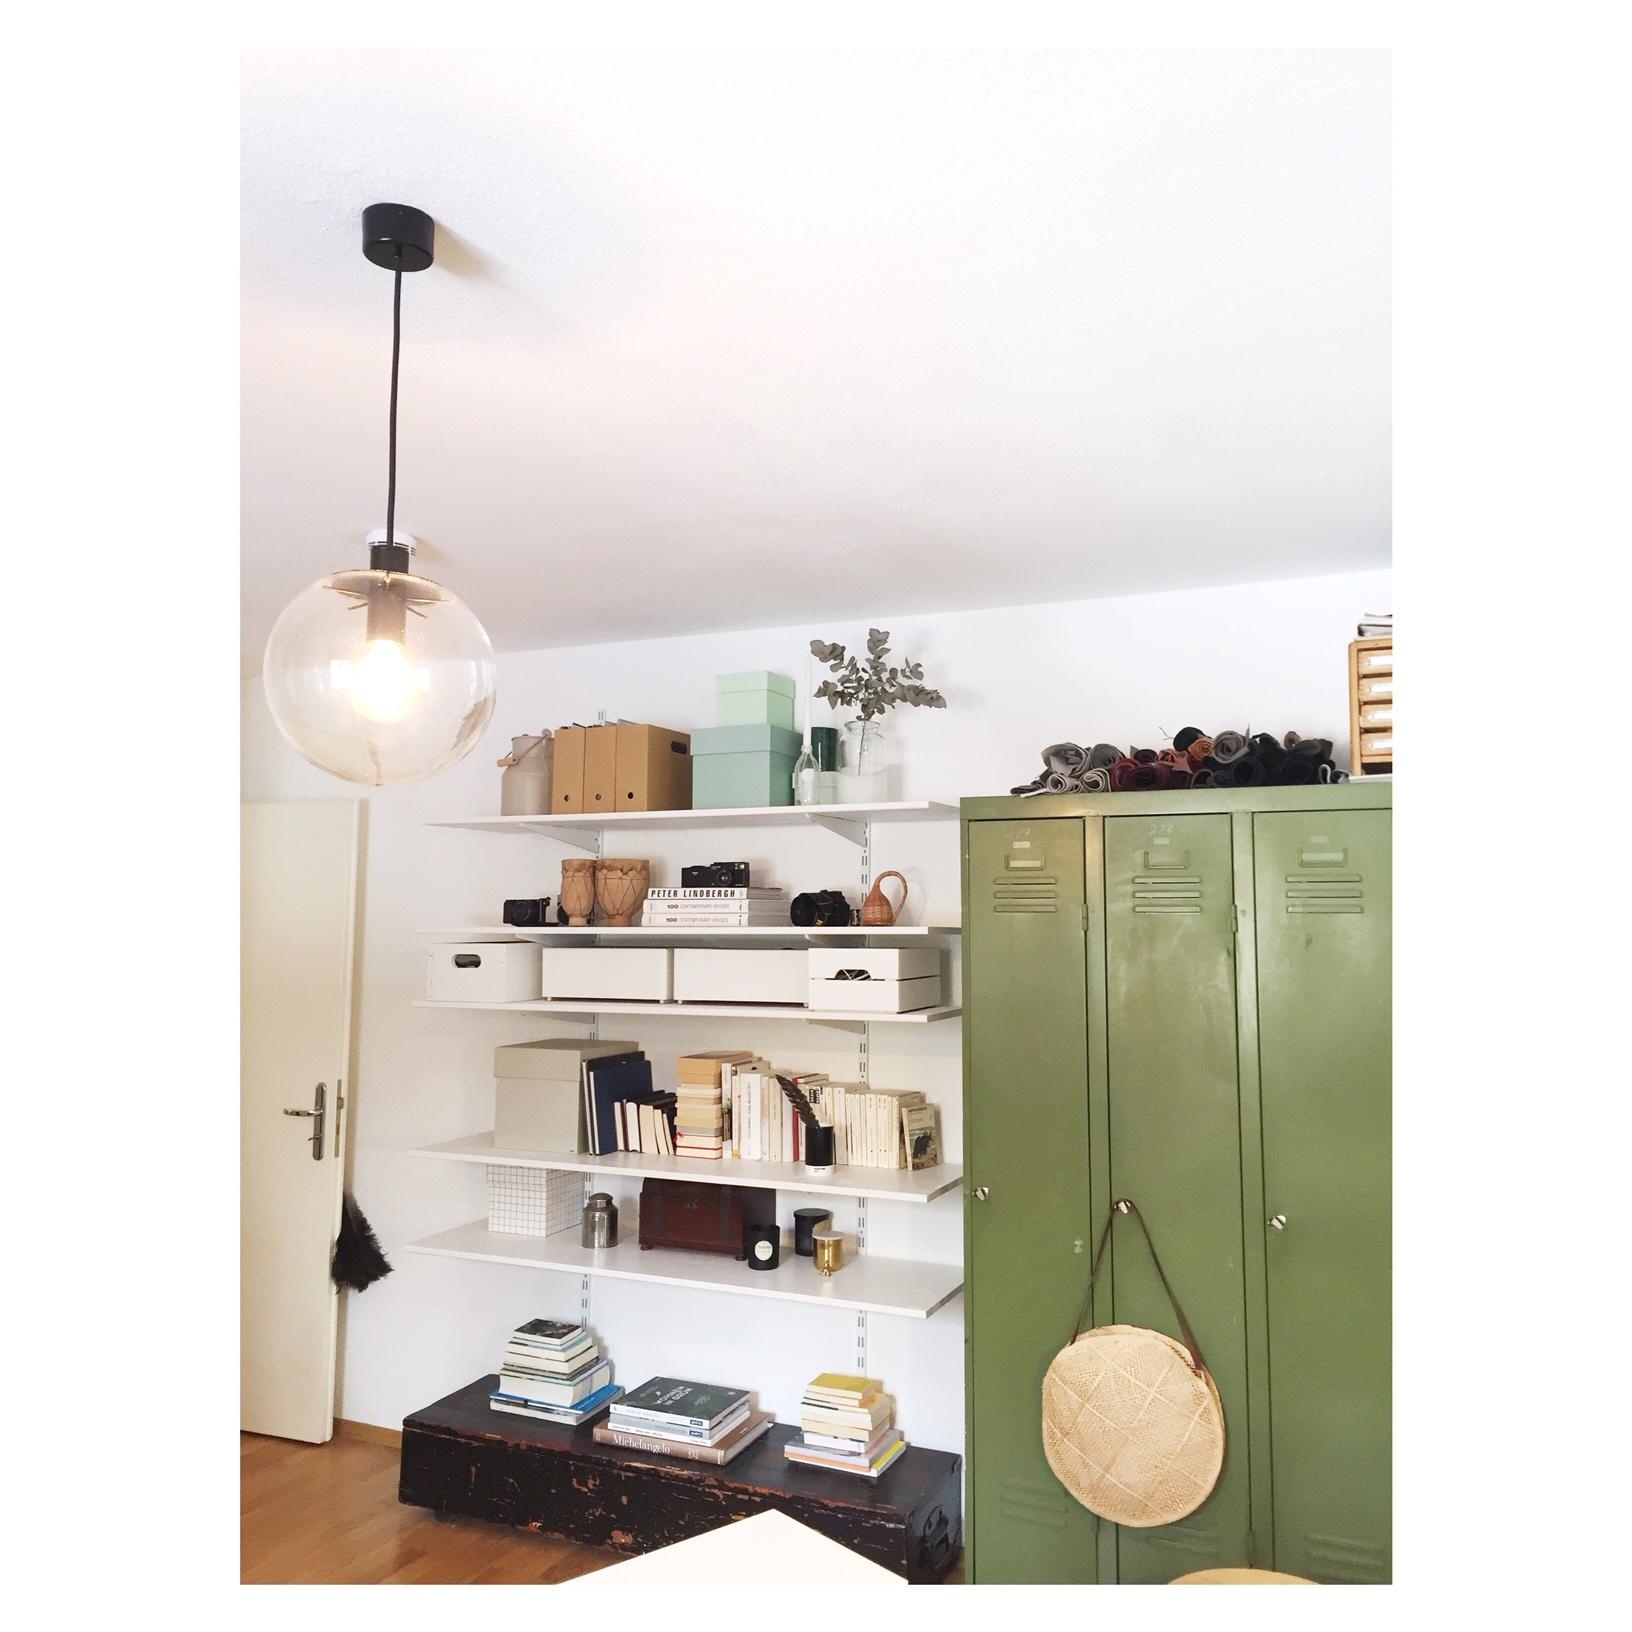 Unser Kreativraum– Stauraum für unsere Materialien & Schätze!

#büro #workspace #shelfie
#classicon #diy #kreativraum